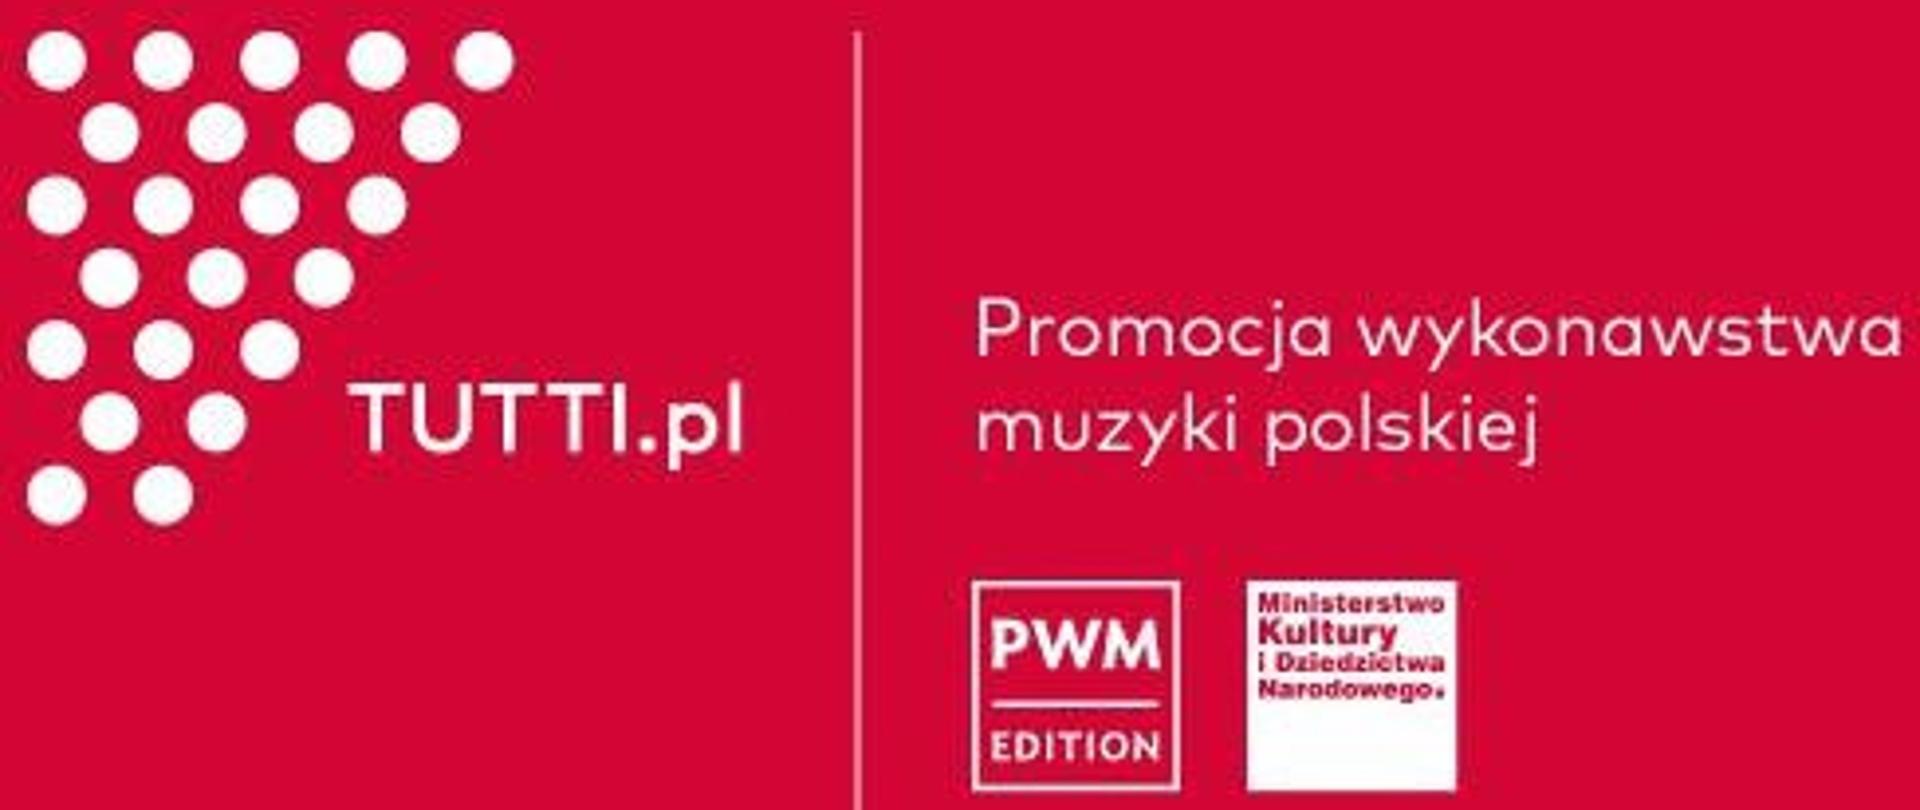 PWM zaprasza do trzeciej edycji TUTTI.pl